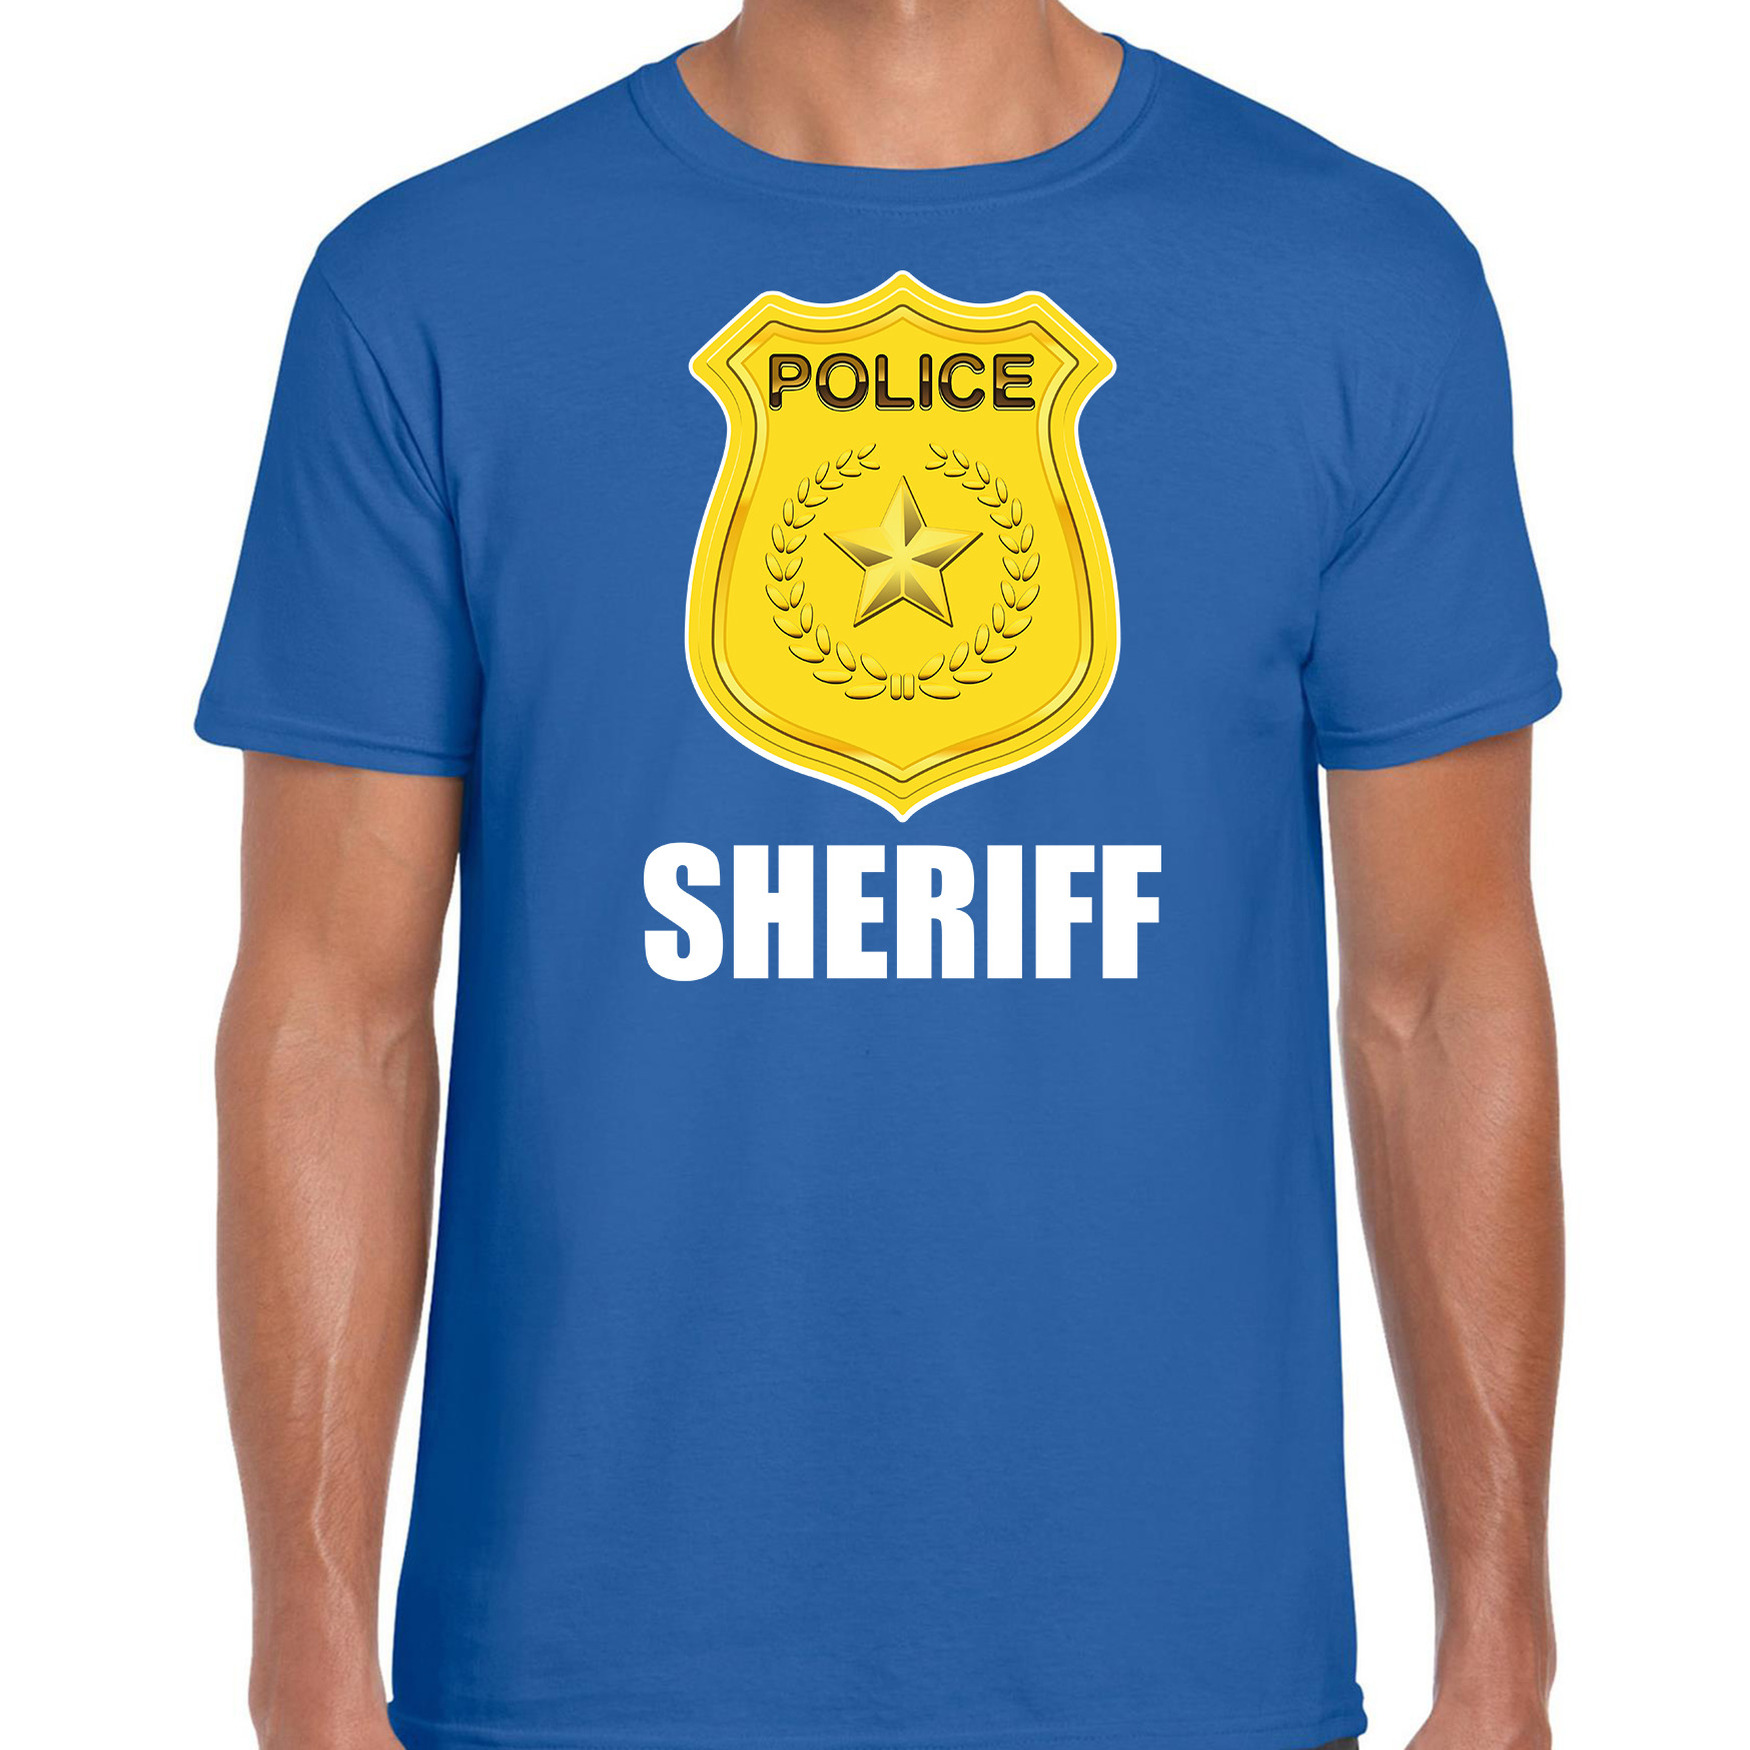 Sheriff police-politie embleem t-shirt blauw voor heren